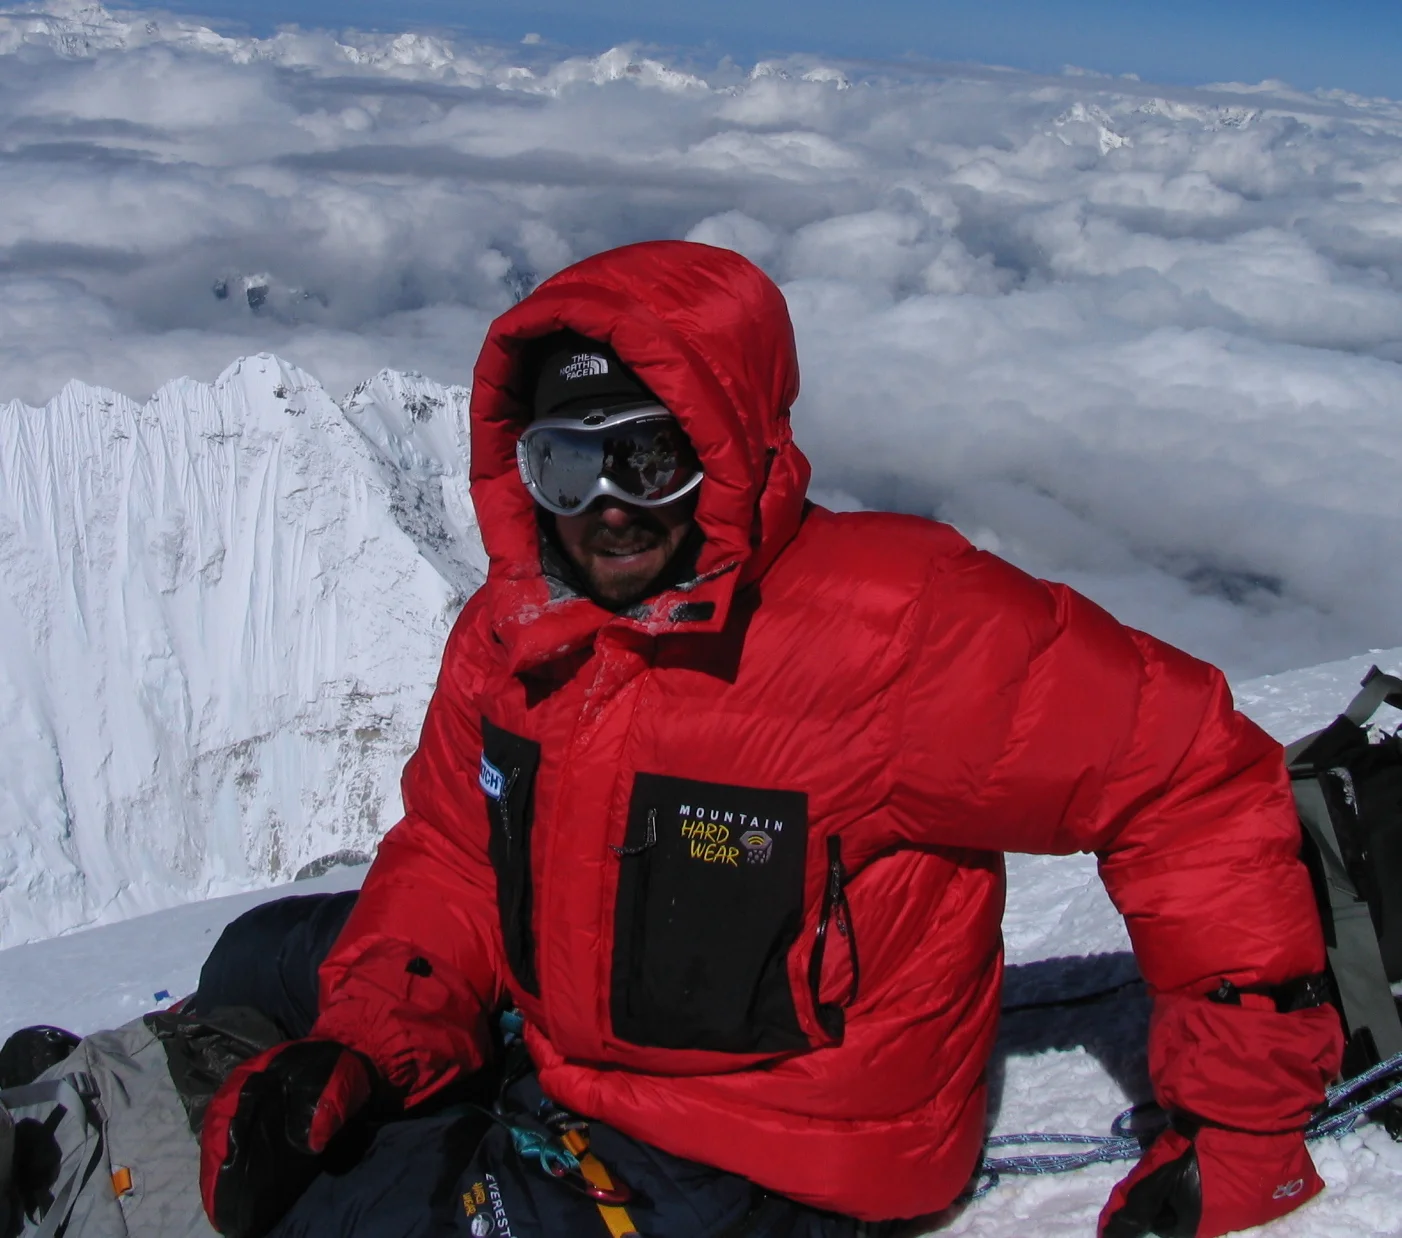 Alan Mallory on the Summit of Mount Everest